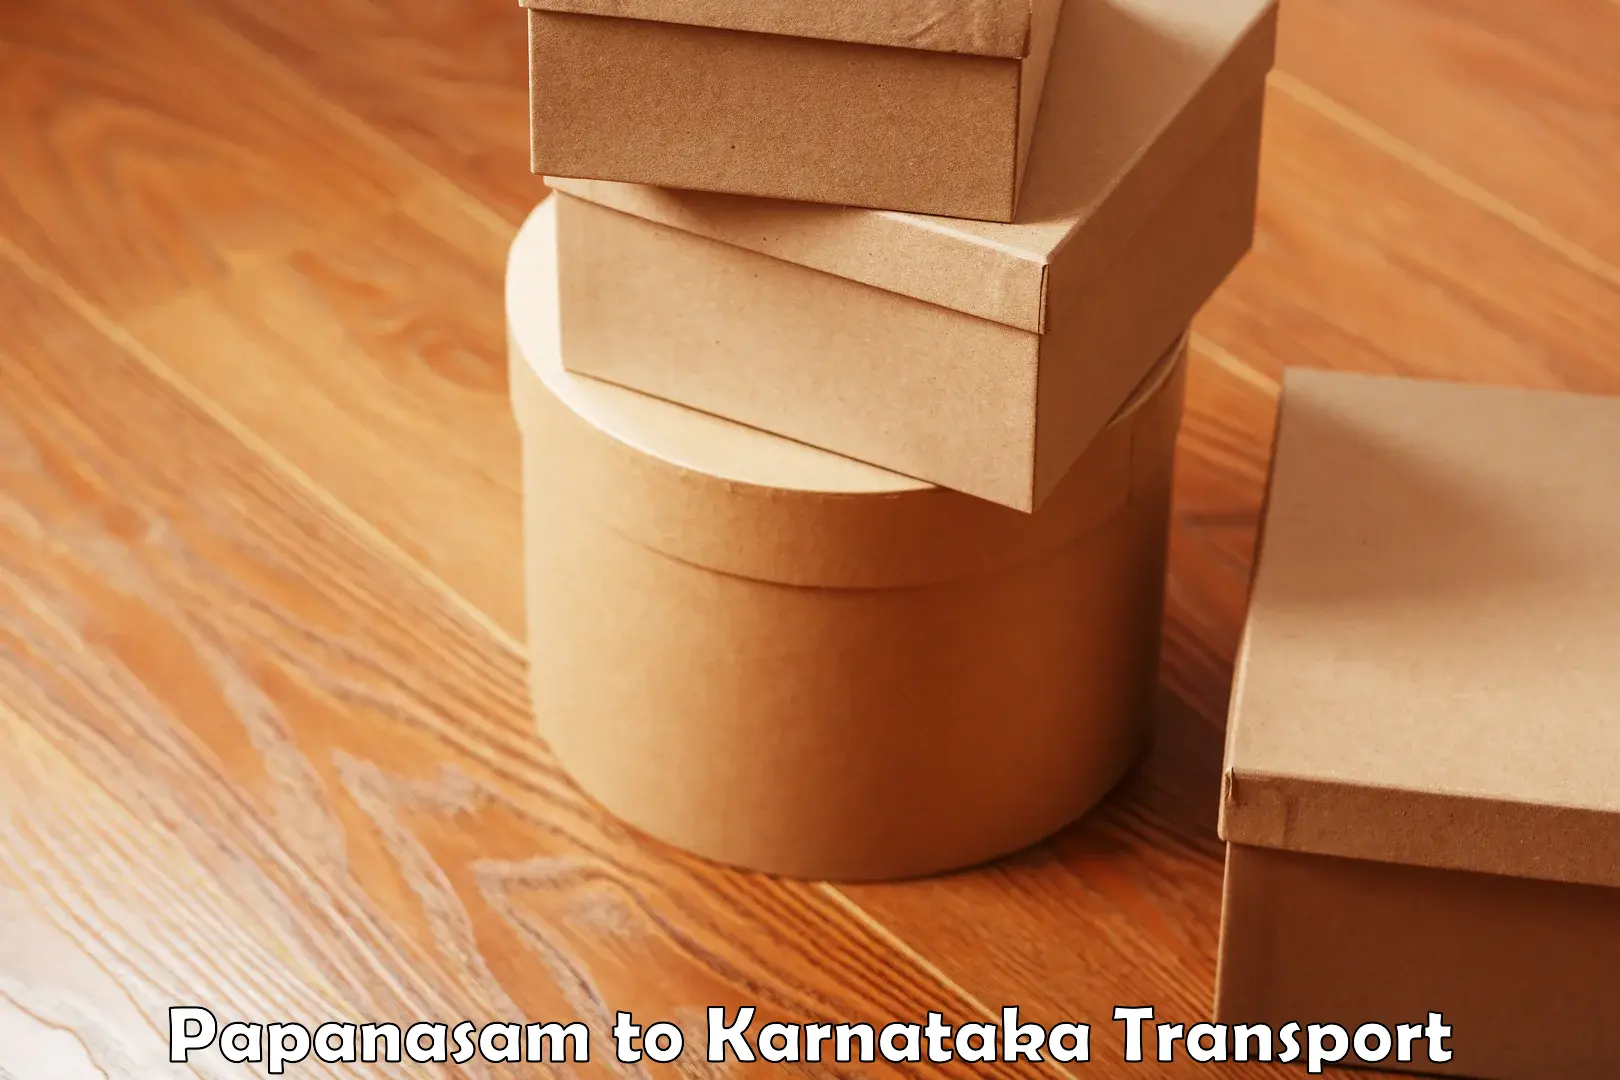 Furniture transport service Papanasam to Bengaluru